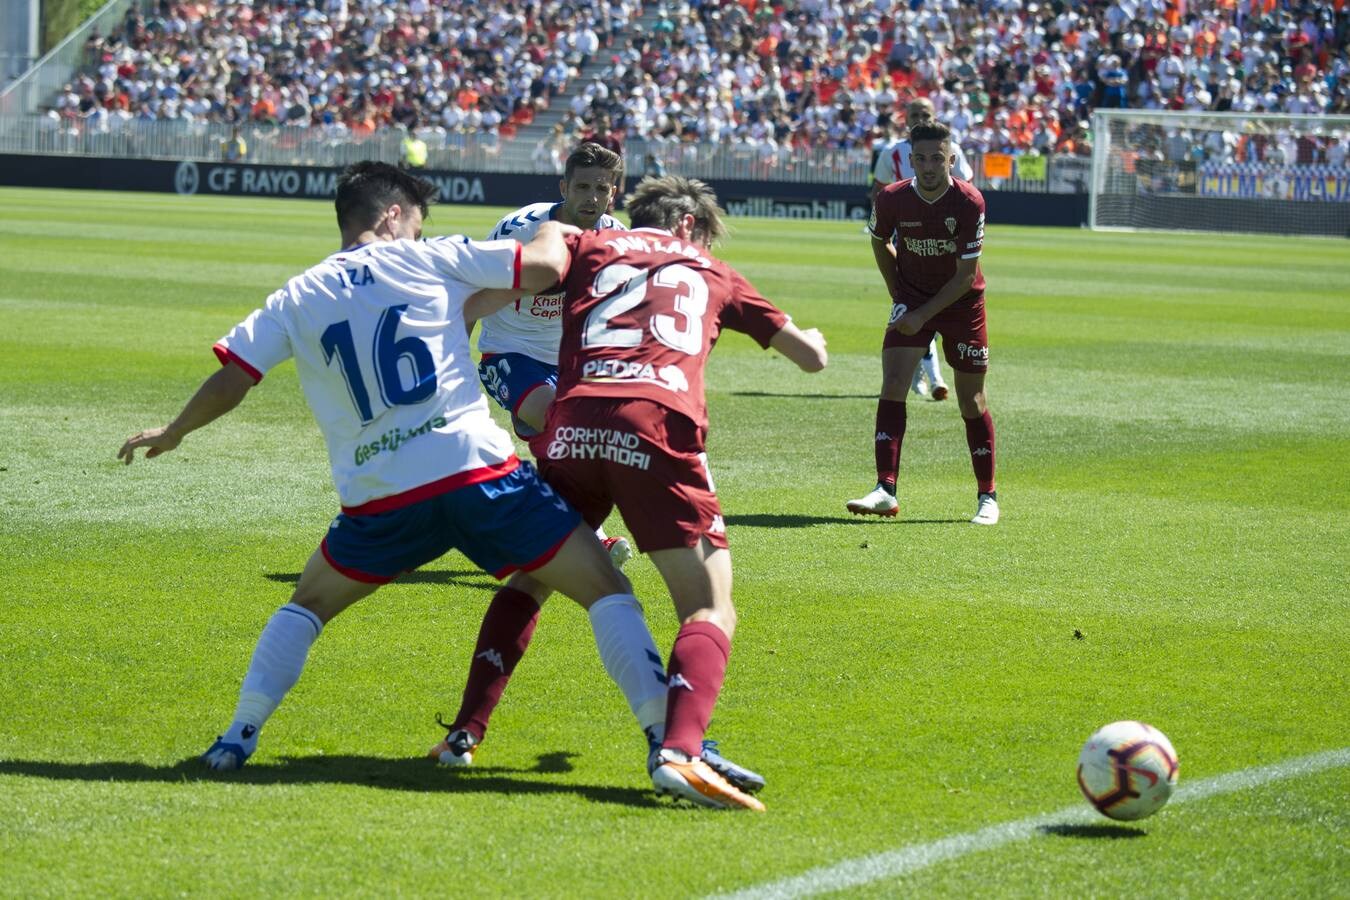 El Rayo Majadahonda-Córdoba CF, en imágenes